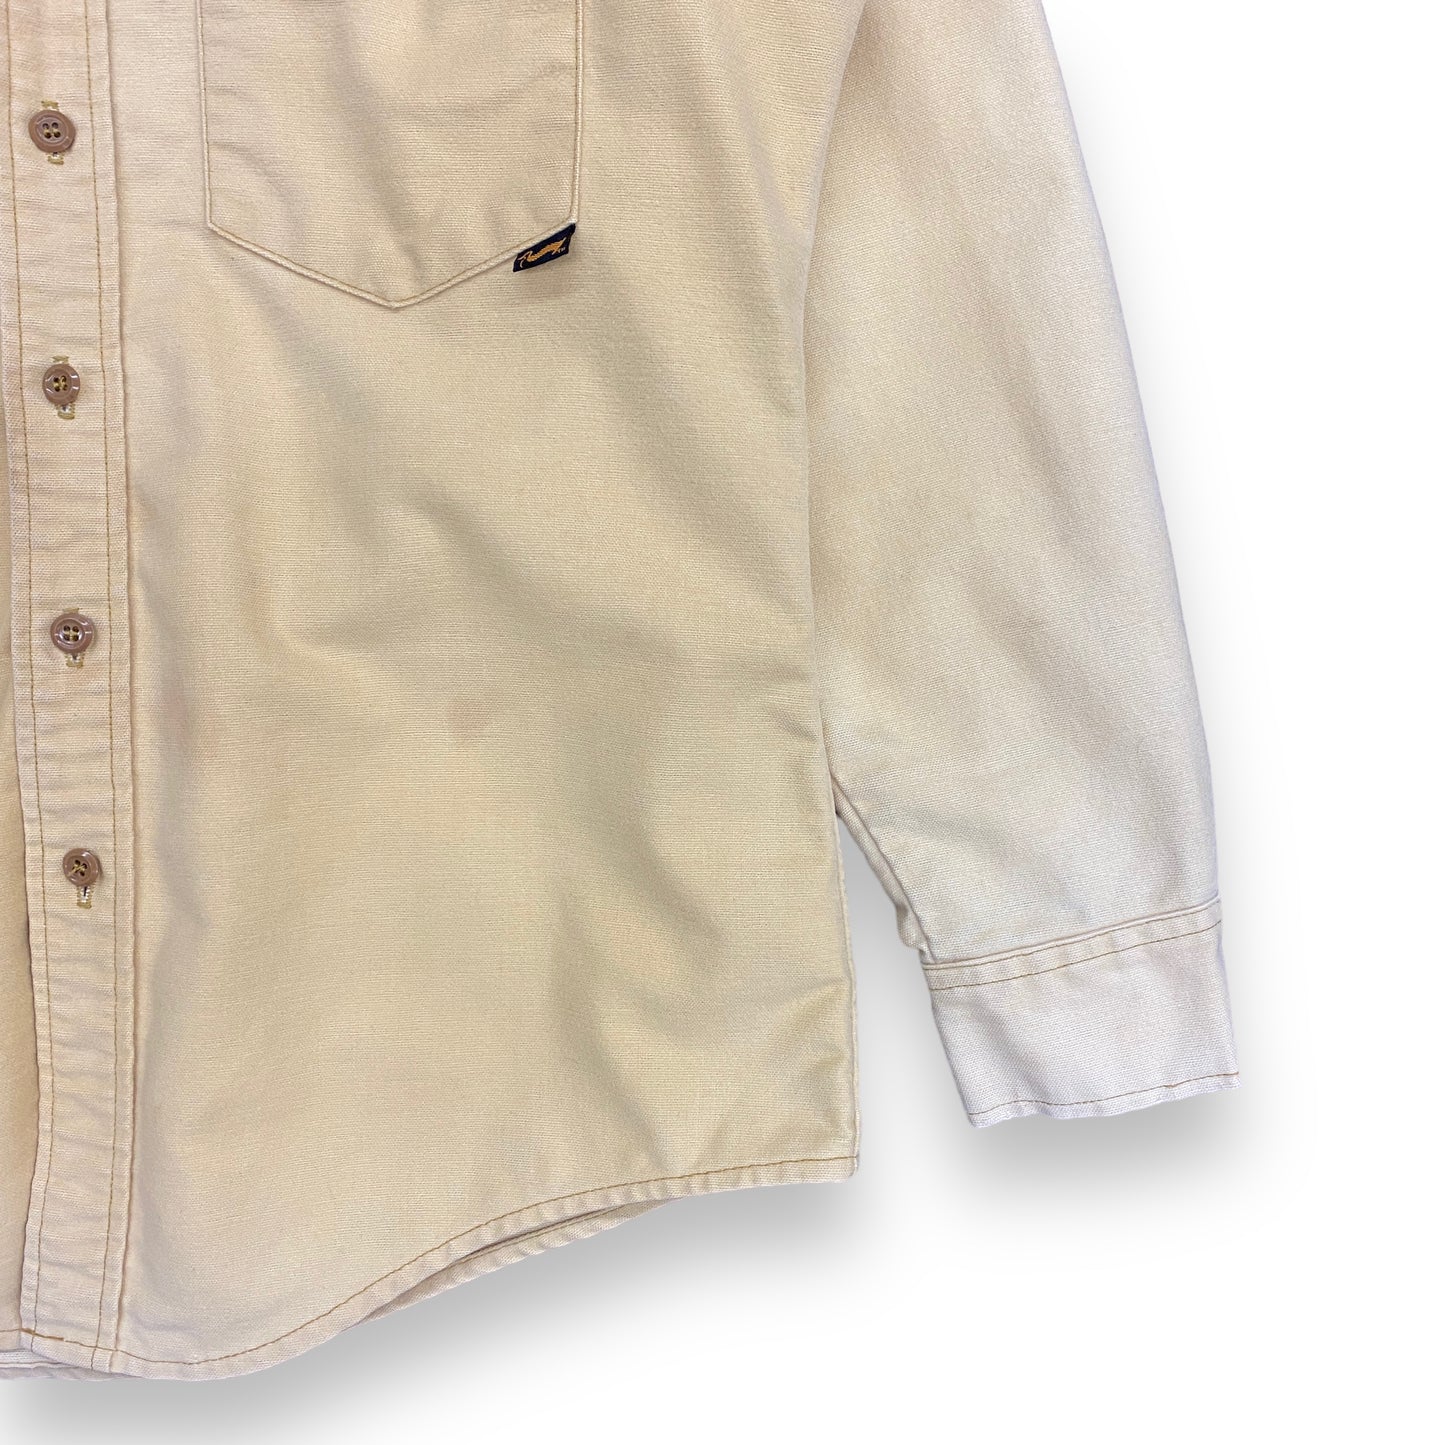 1980s Duxbak Light Yellow Canvas Button Up Shirt - Size Large